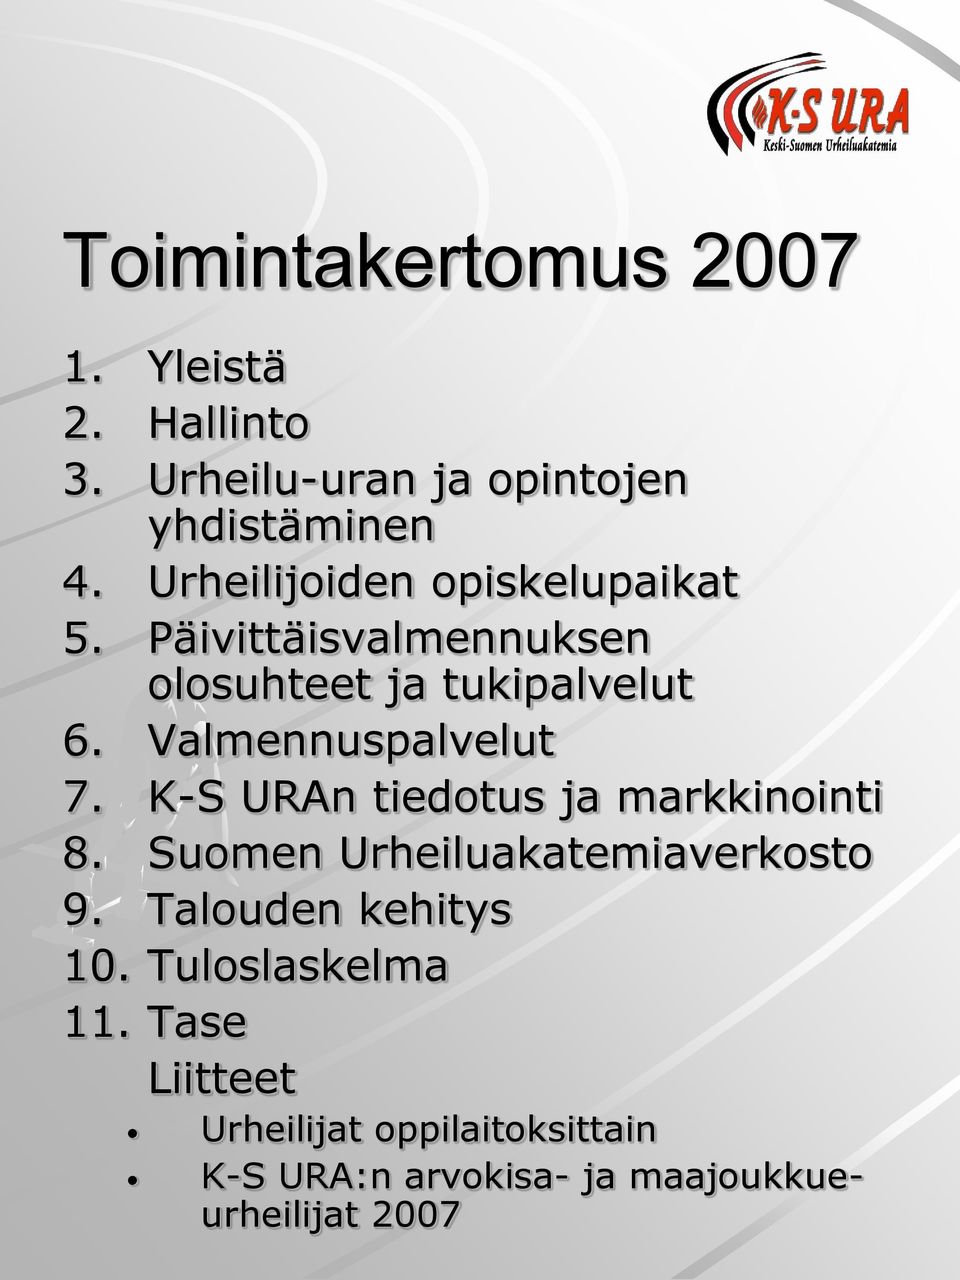 Valmennuspalvelut 7. K-S URAn tiedotus ja markkinointi 8. Suomen Urheiluakatemiaverkosto 9.